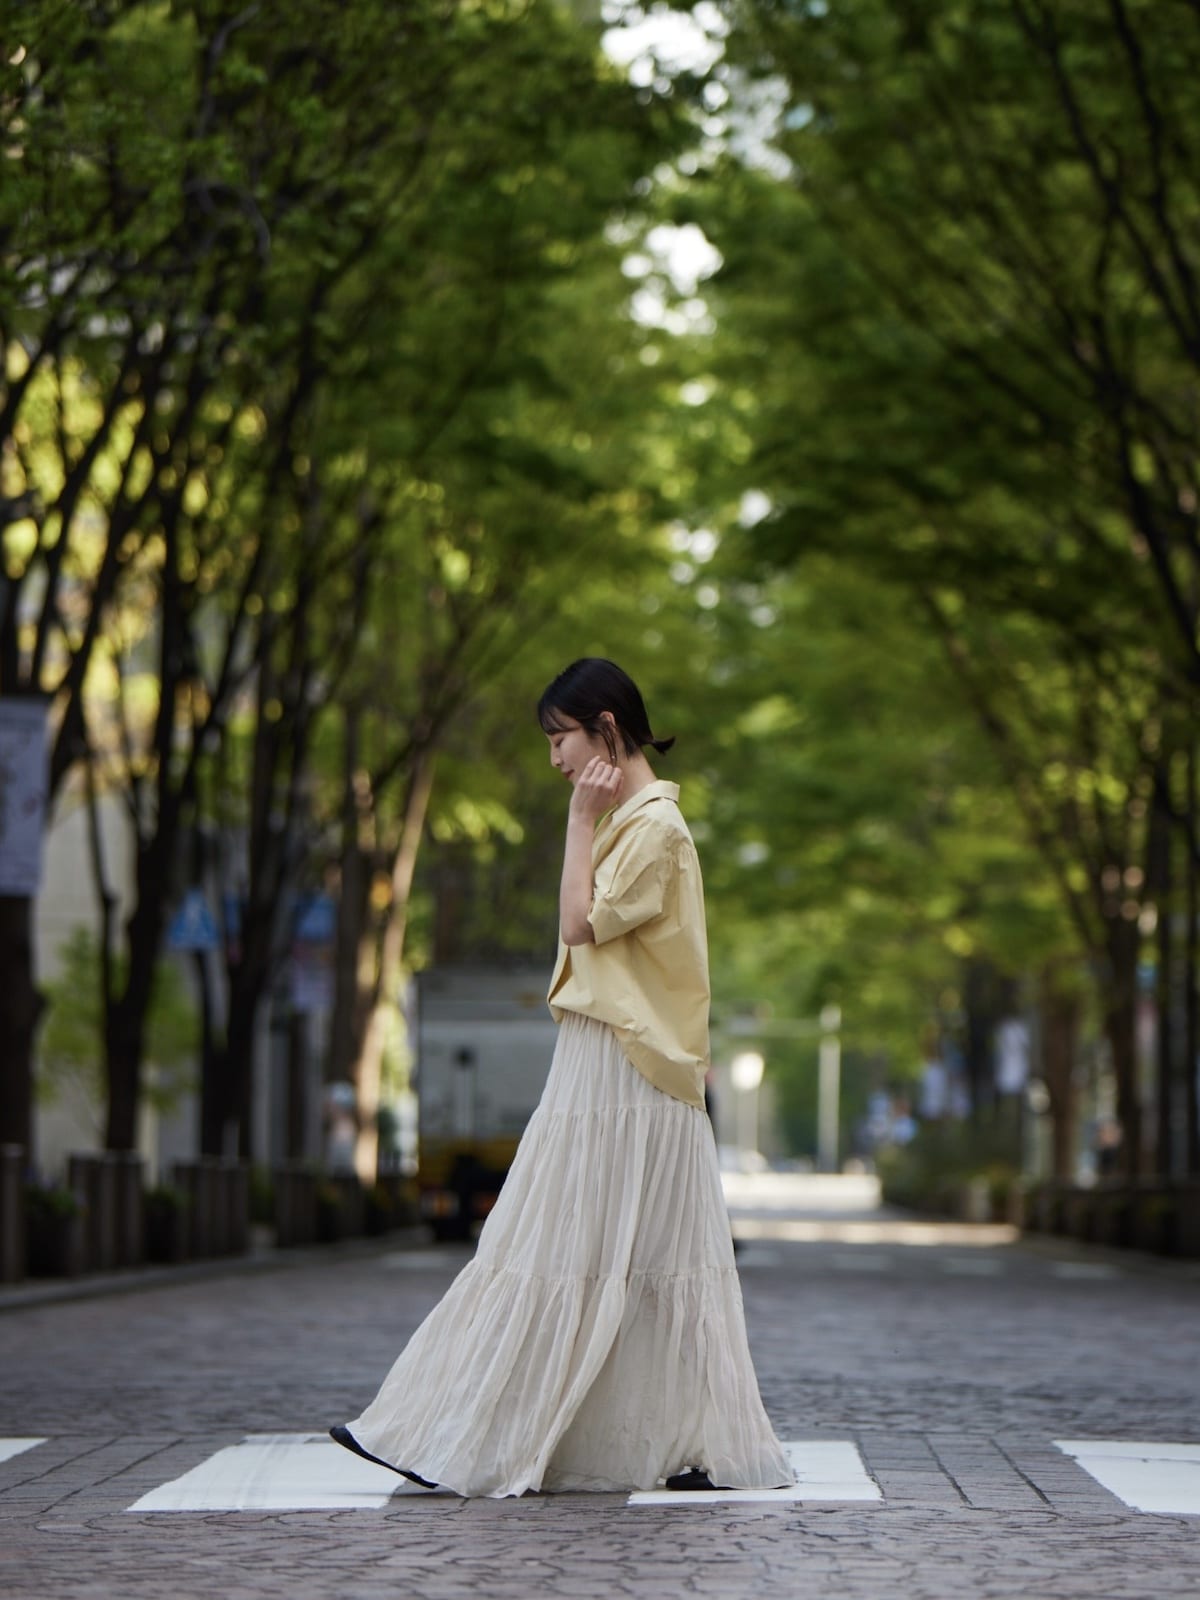 tiered fuwafuwa skirt